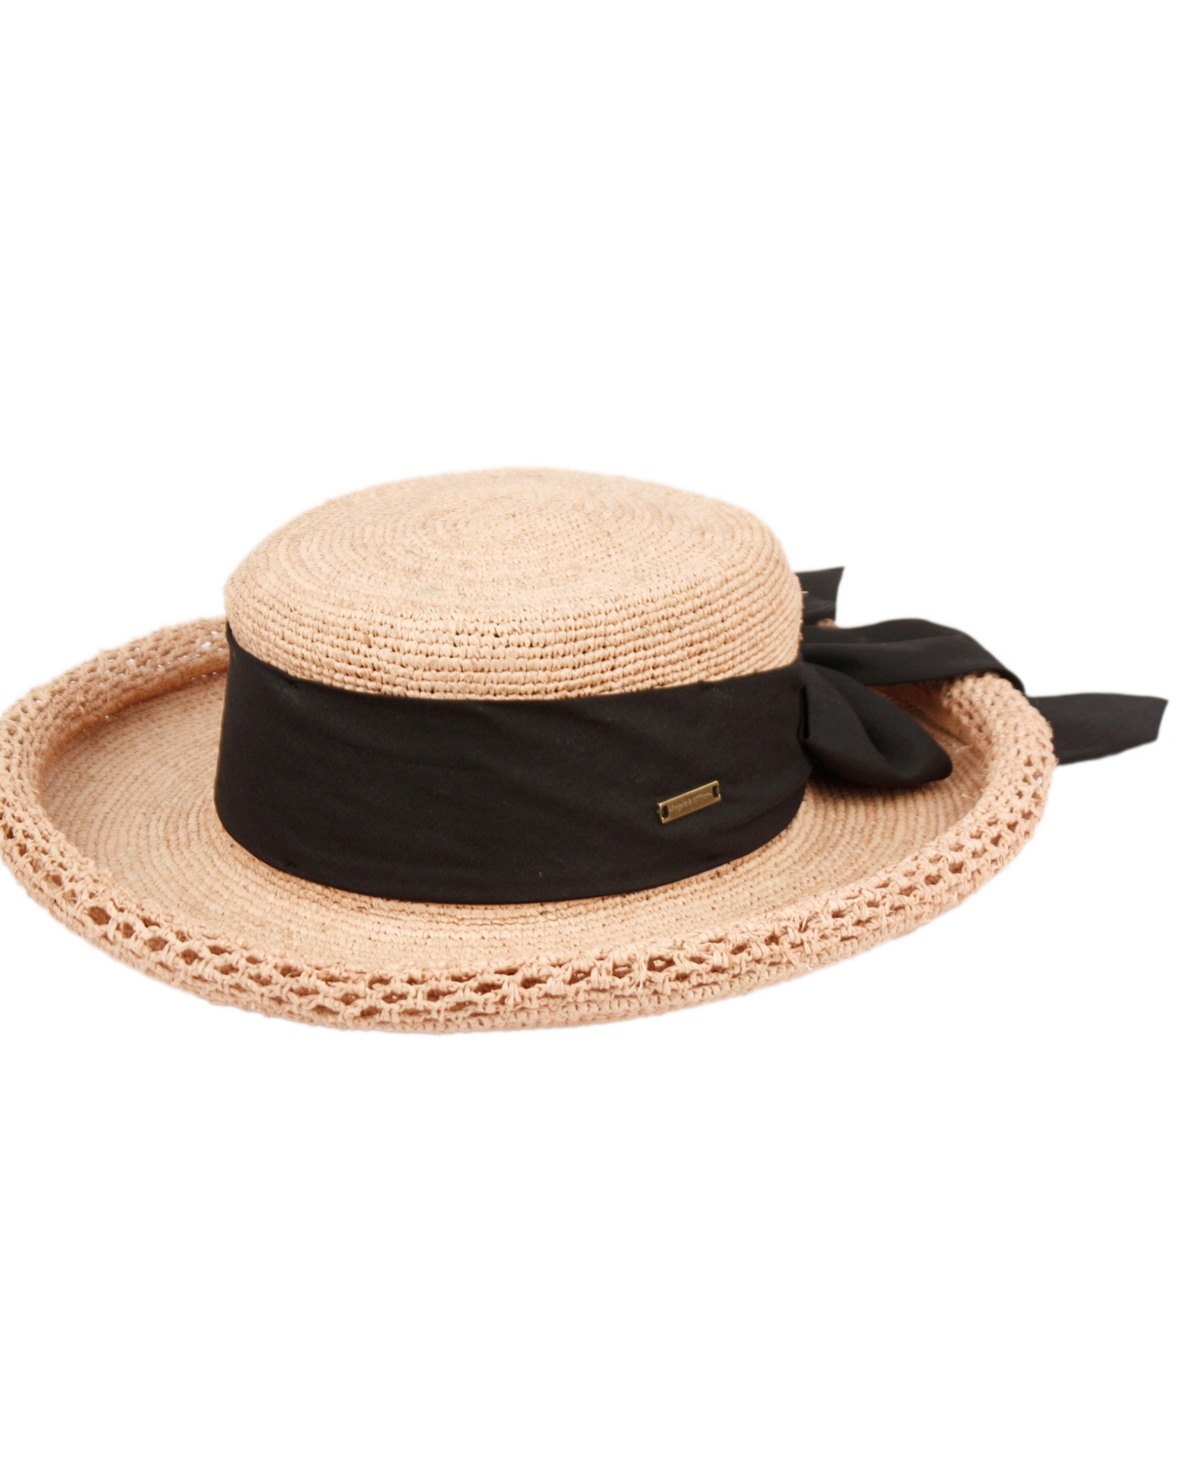 Angela & William Women's Beach Sun Straw Floppy Hat In Gold